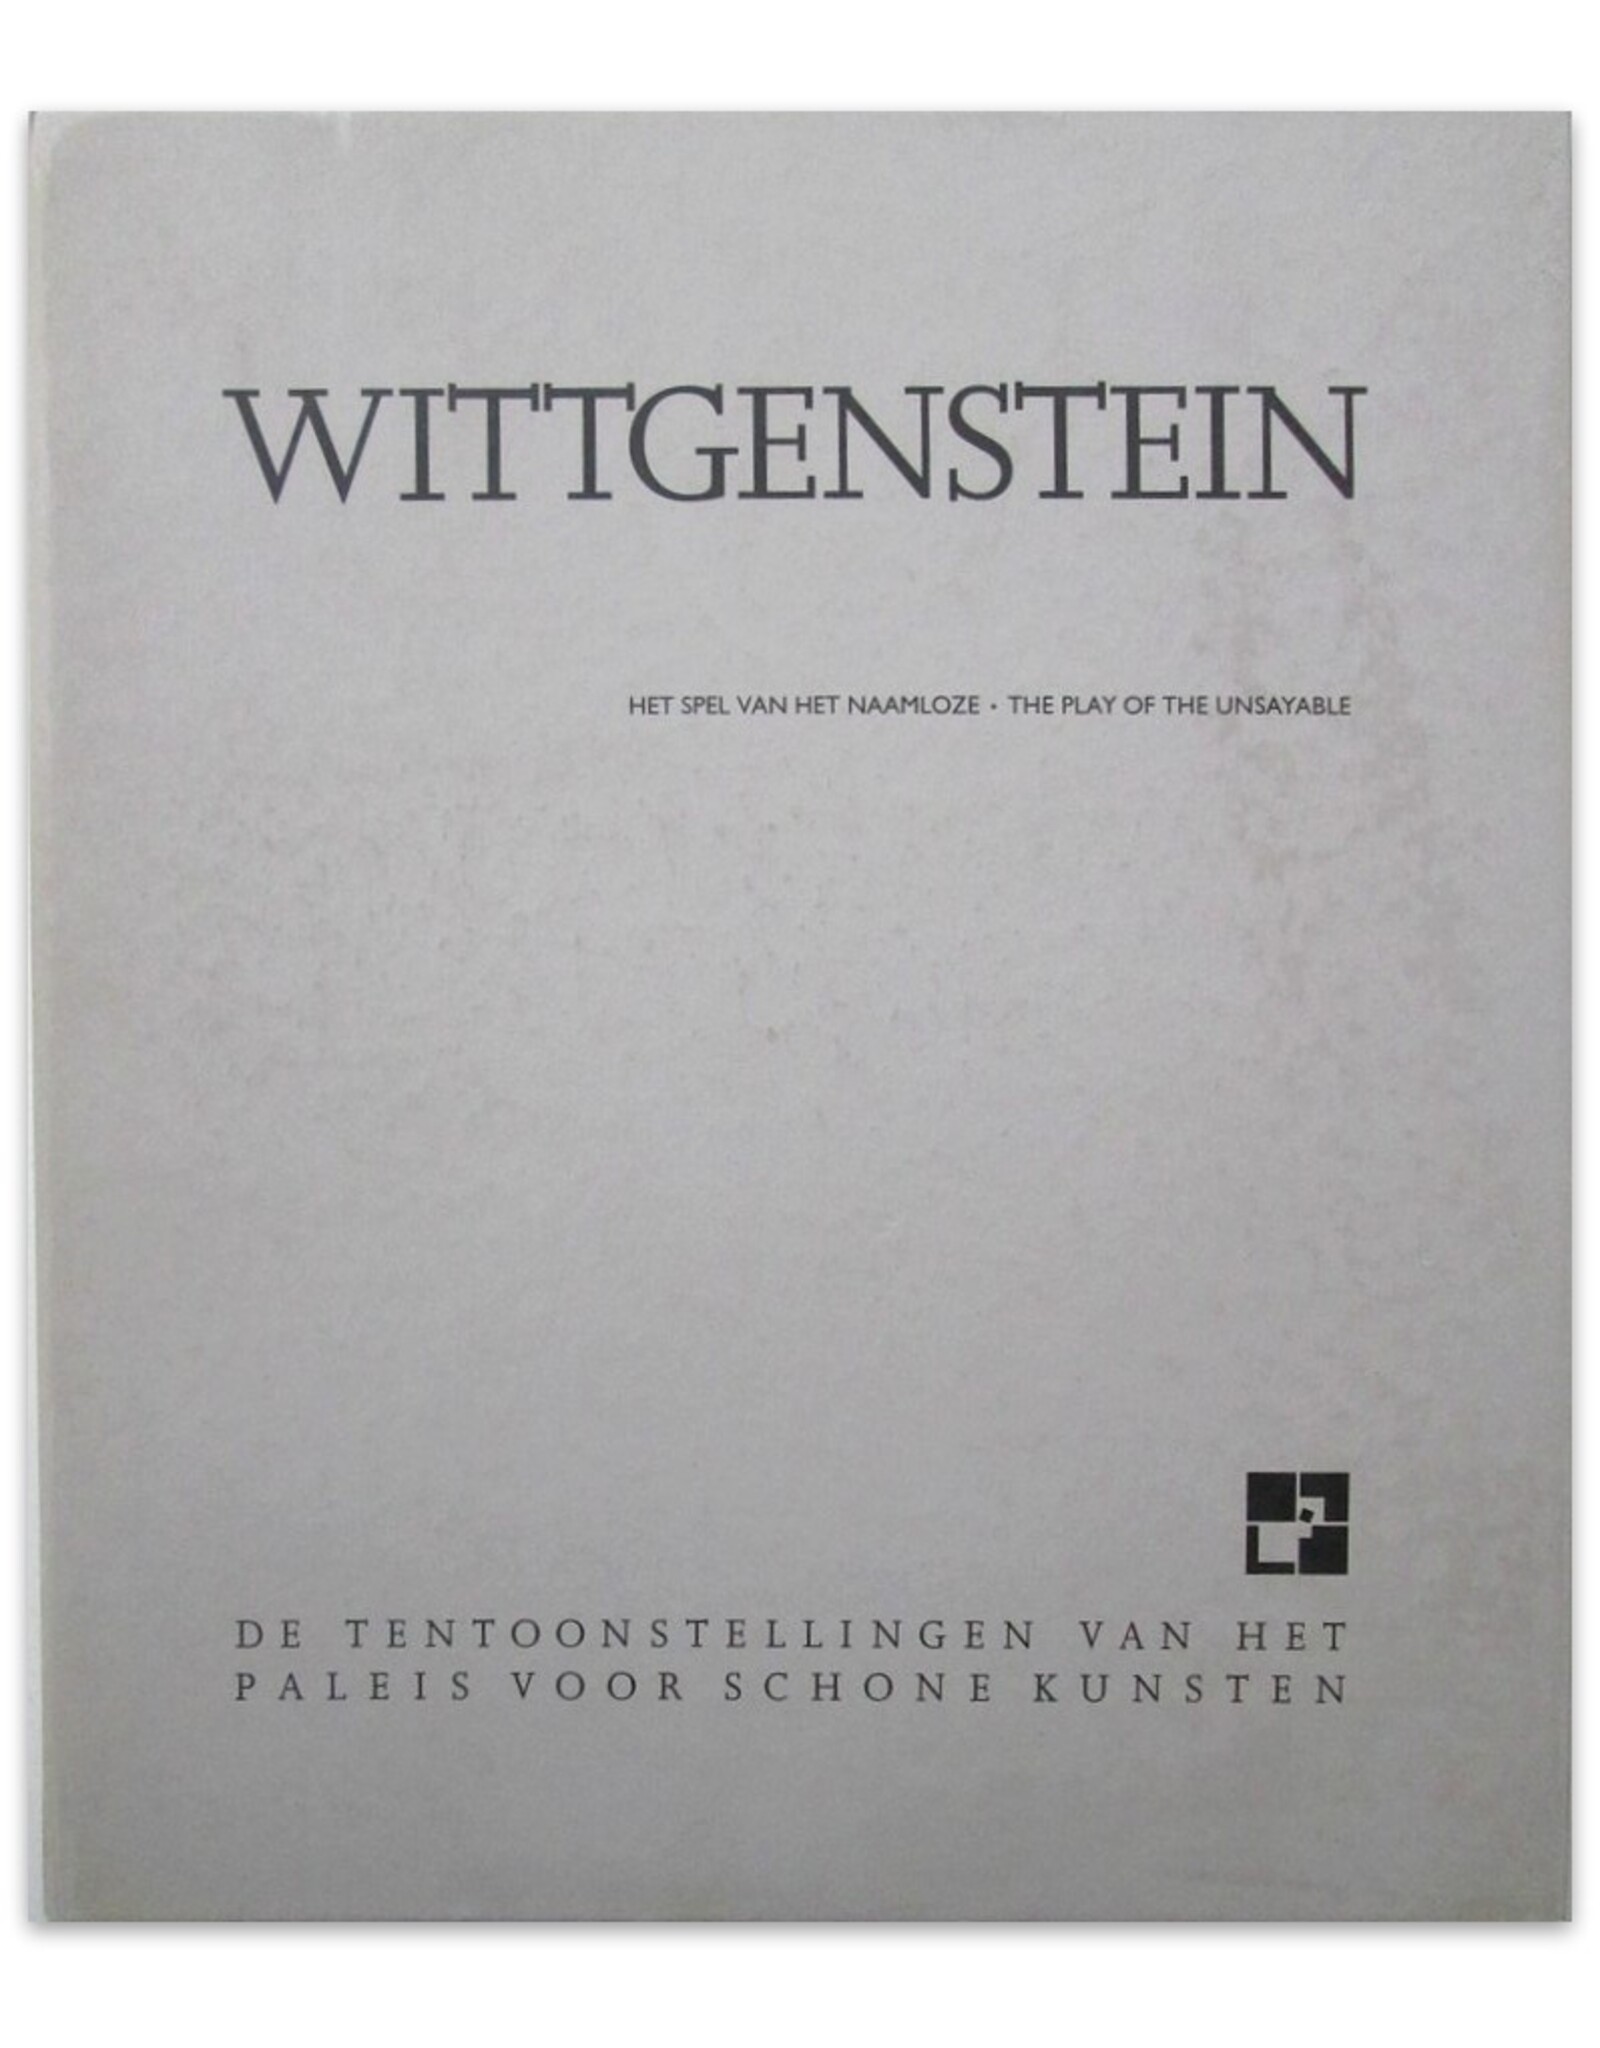 Joseph Kosuth - Wittgenstein. Het spel van het naamloze / The Play of the Unsayable